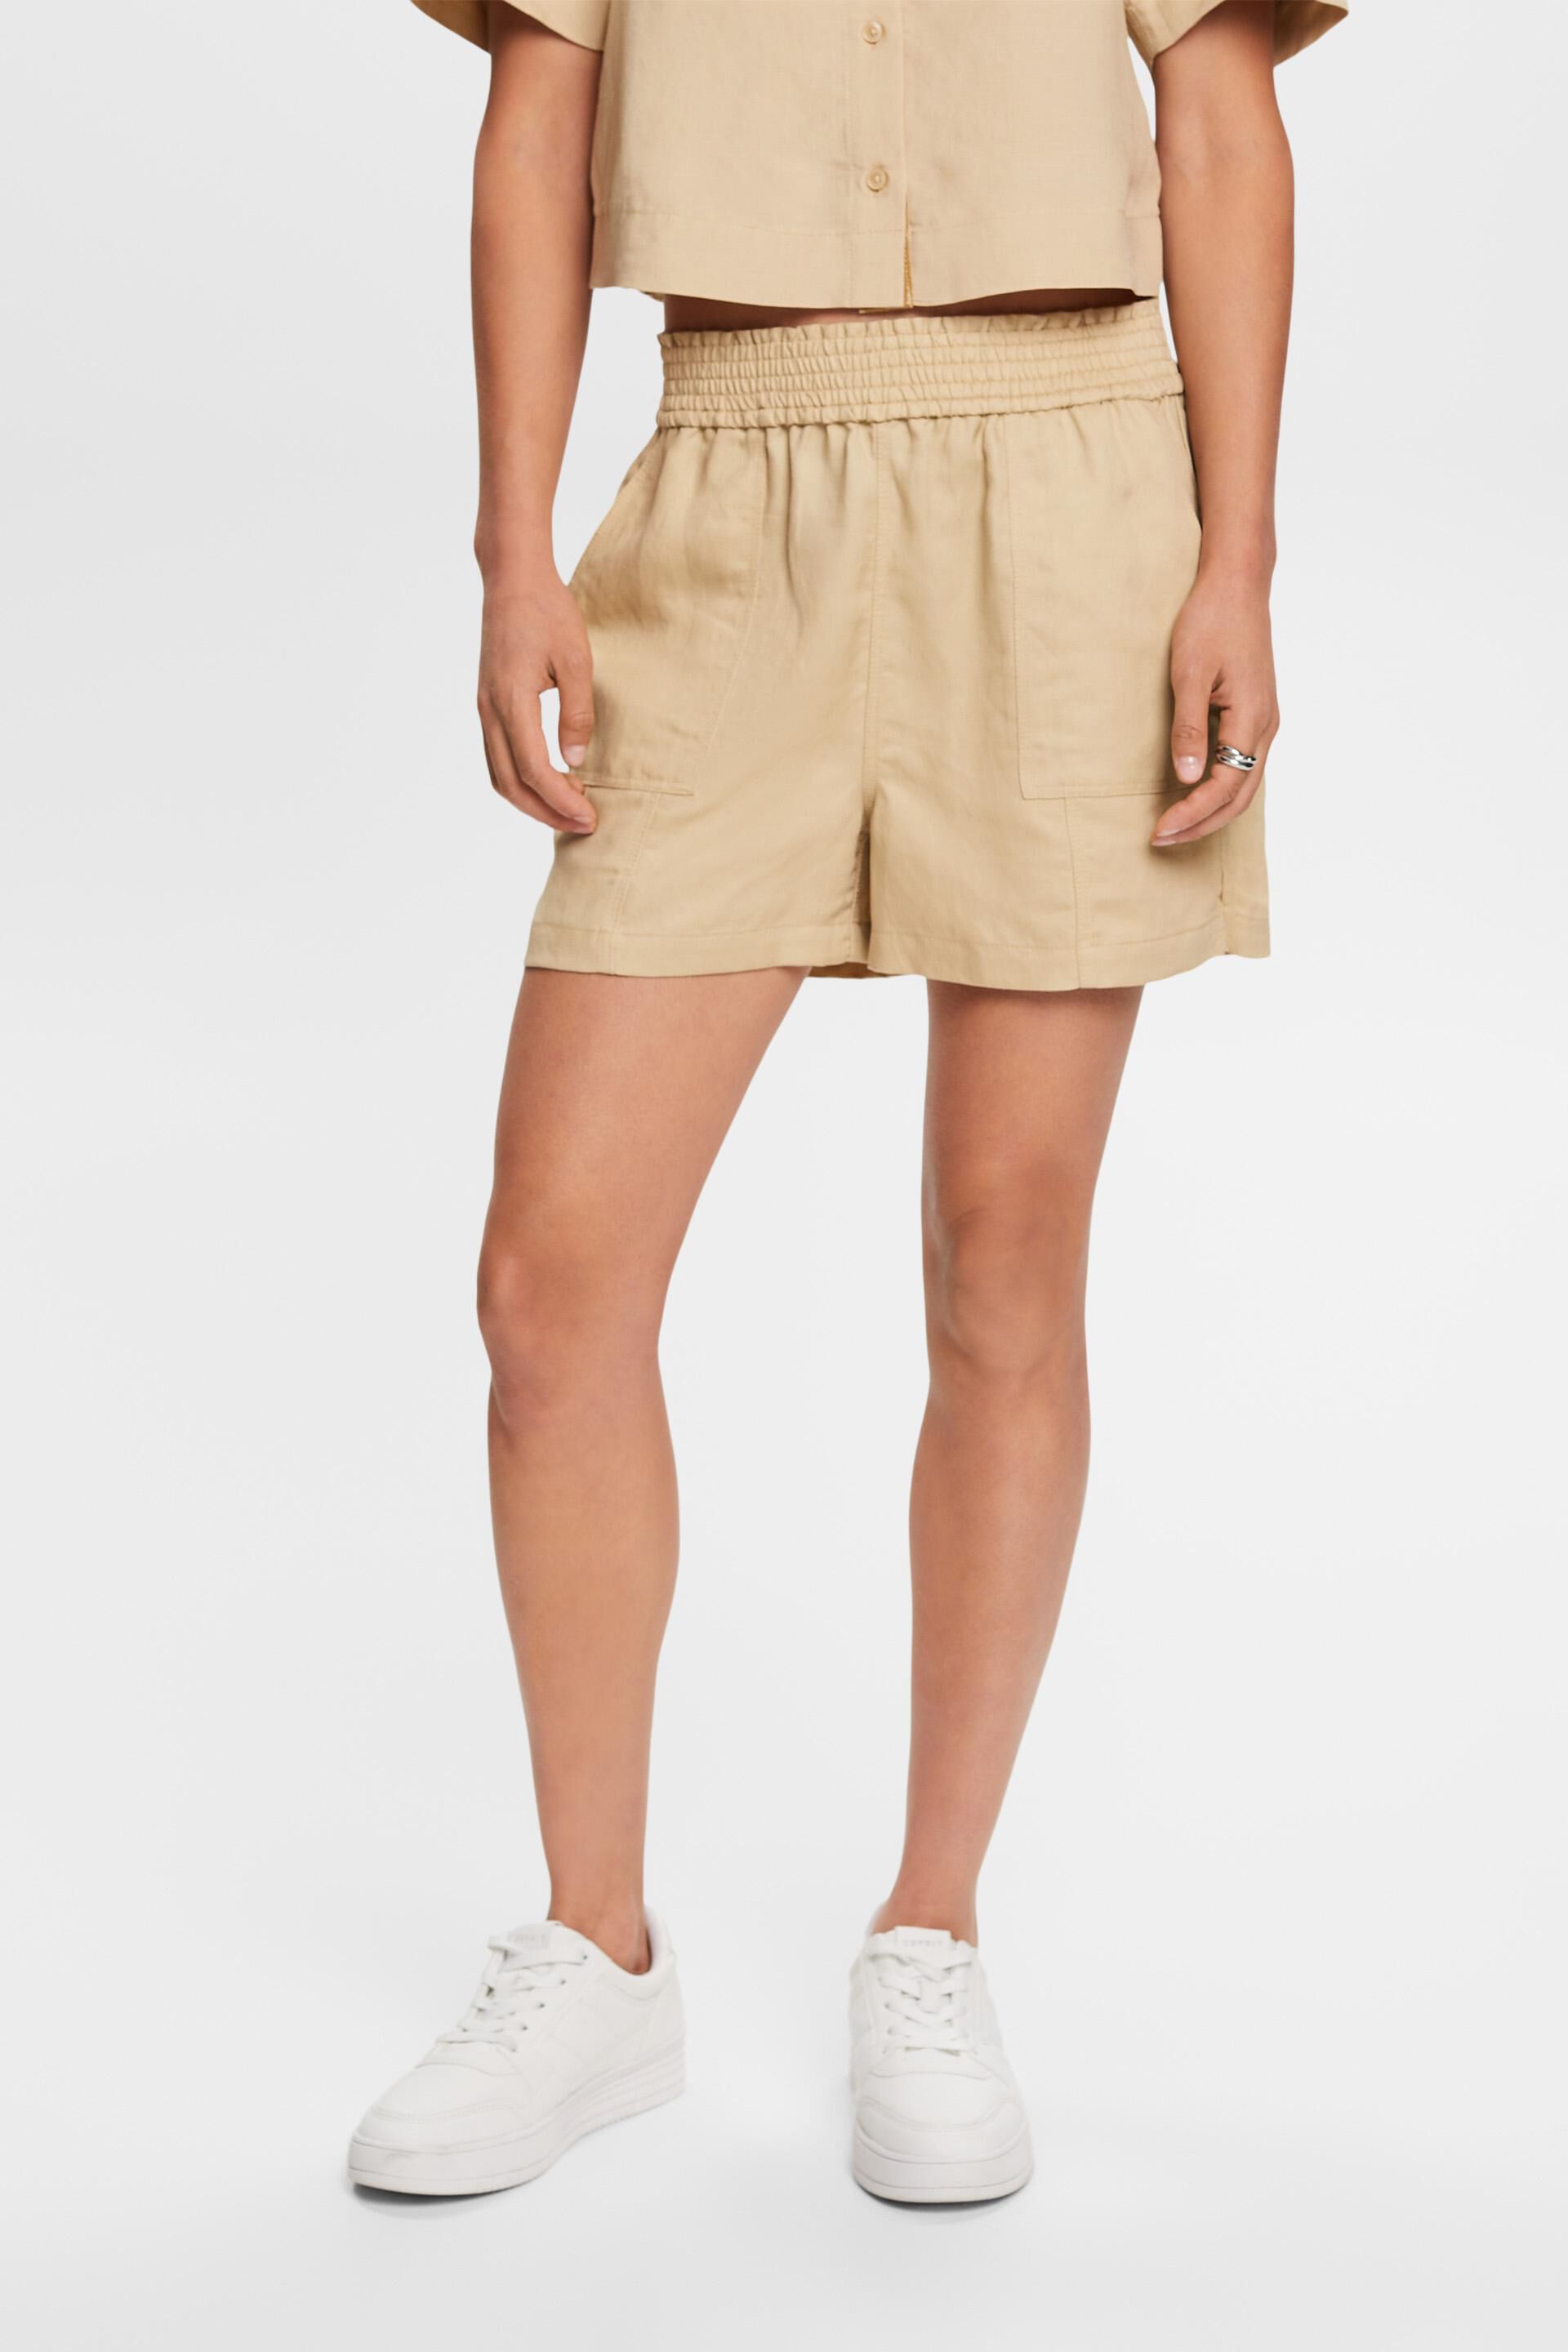 Esprit Damen Pull-on shorts, linen blend